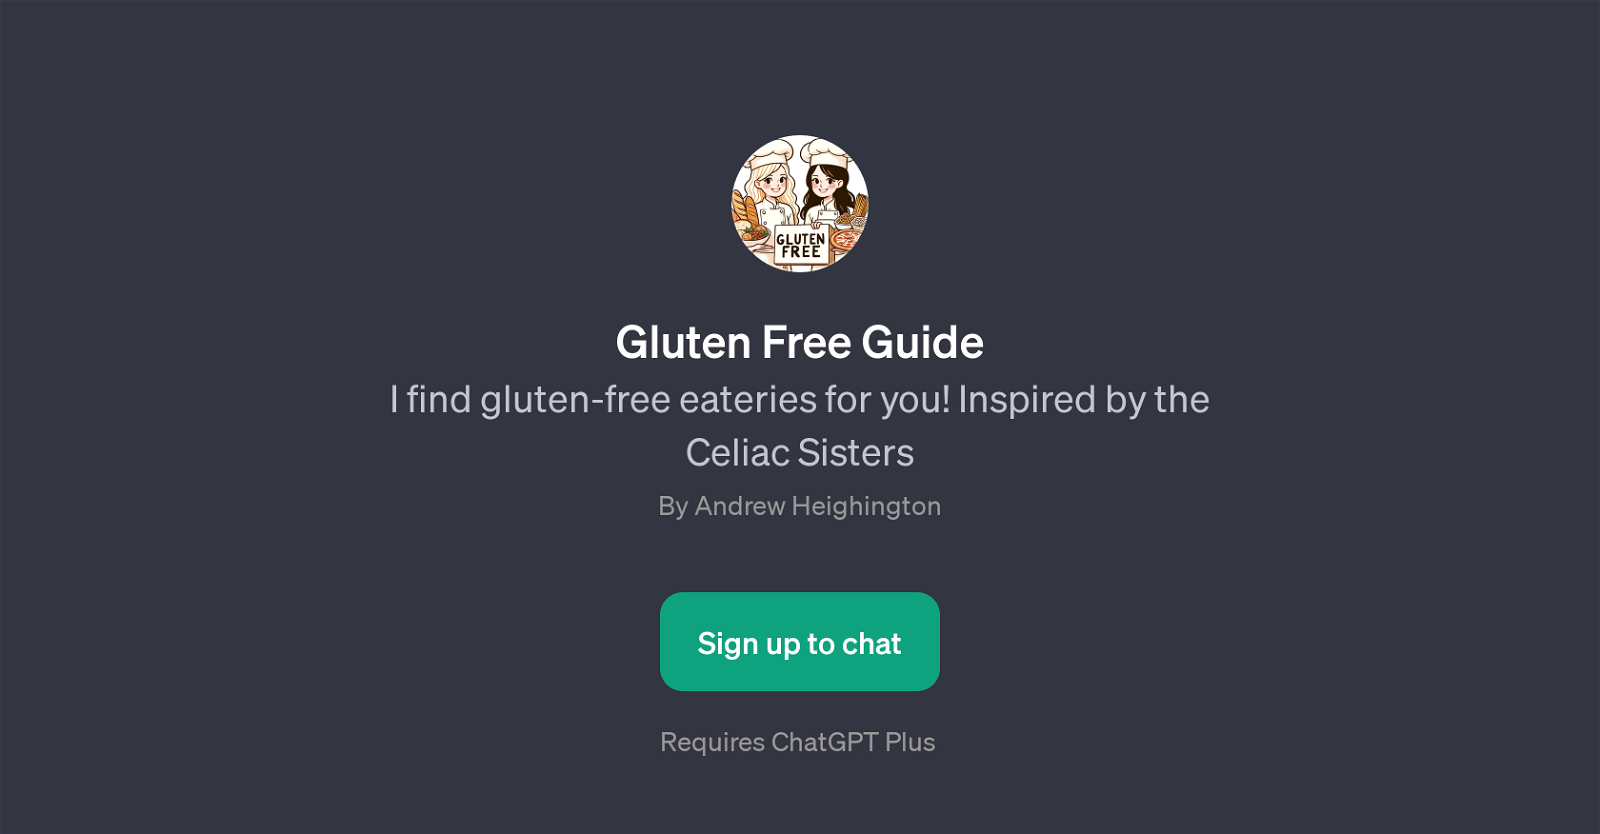 Gluten Free Guide website